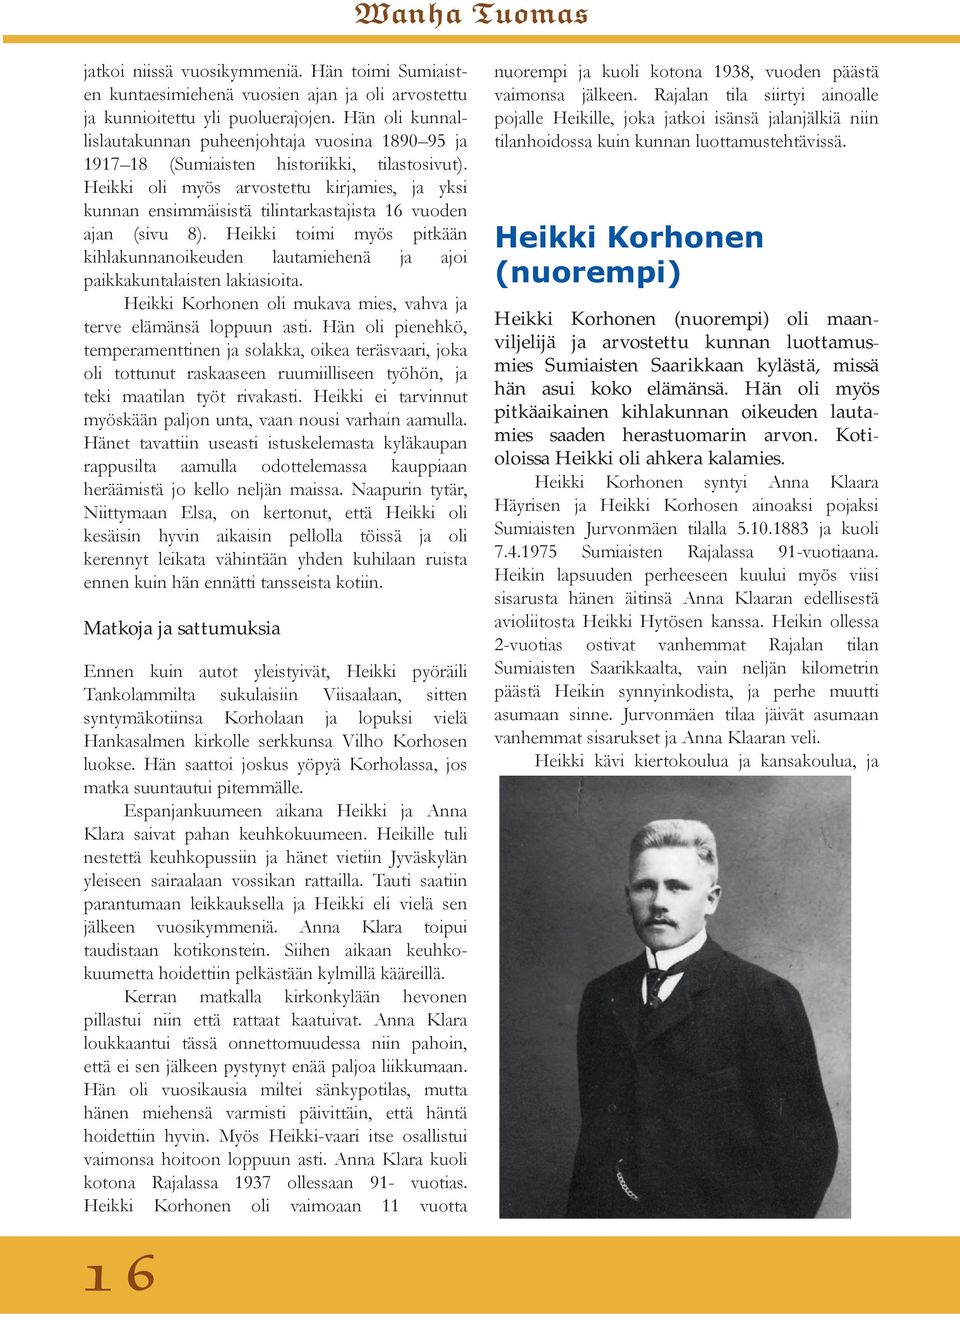 Heikki oli myös arvostettu kirjamies, ja yksi kunnan ensimmäisistä tilintarkastajista 16 vuoden ajan (sivu 8).